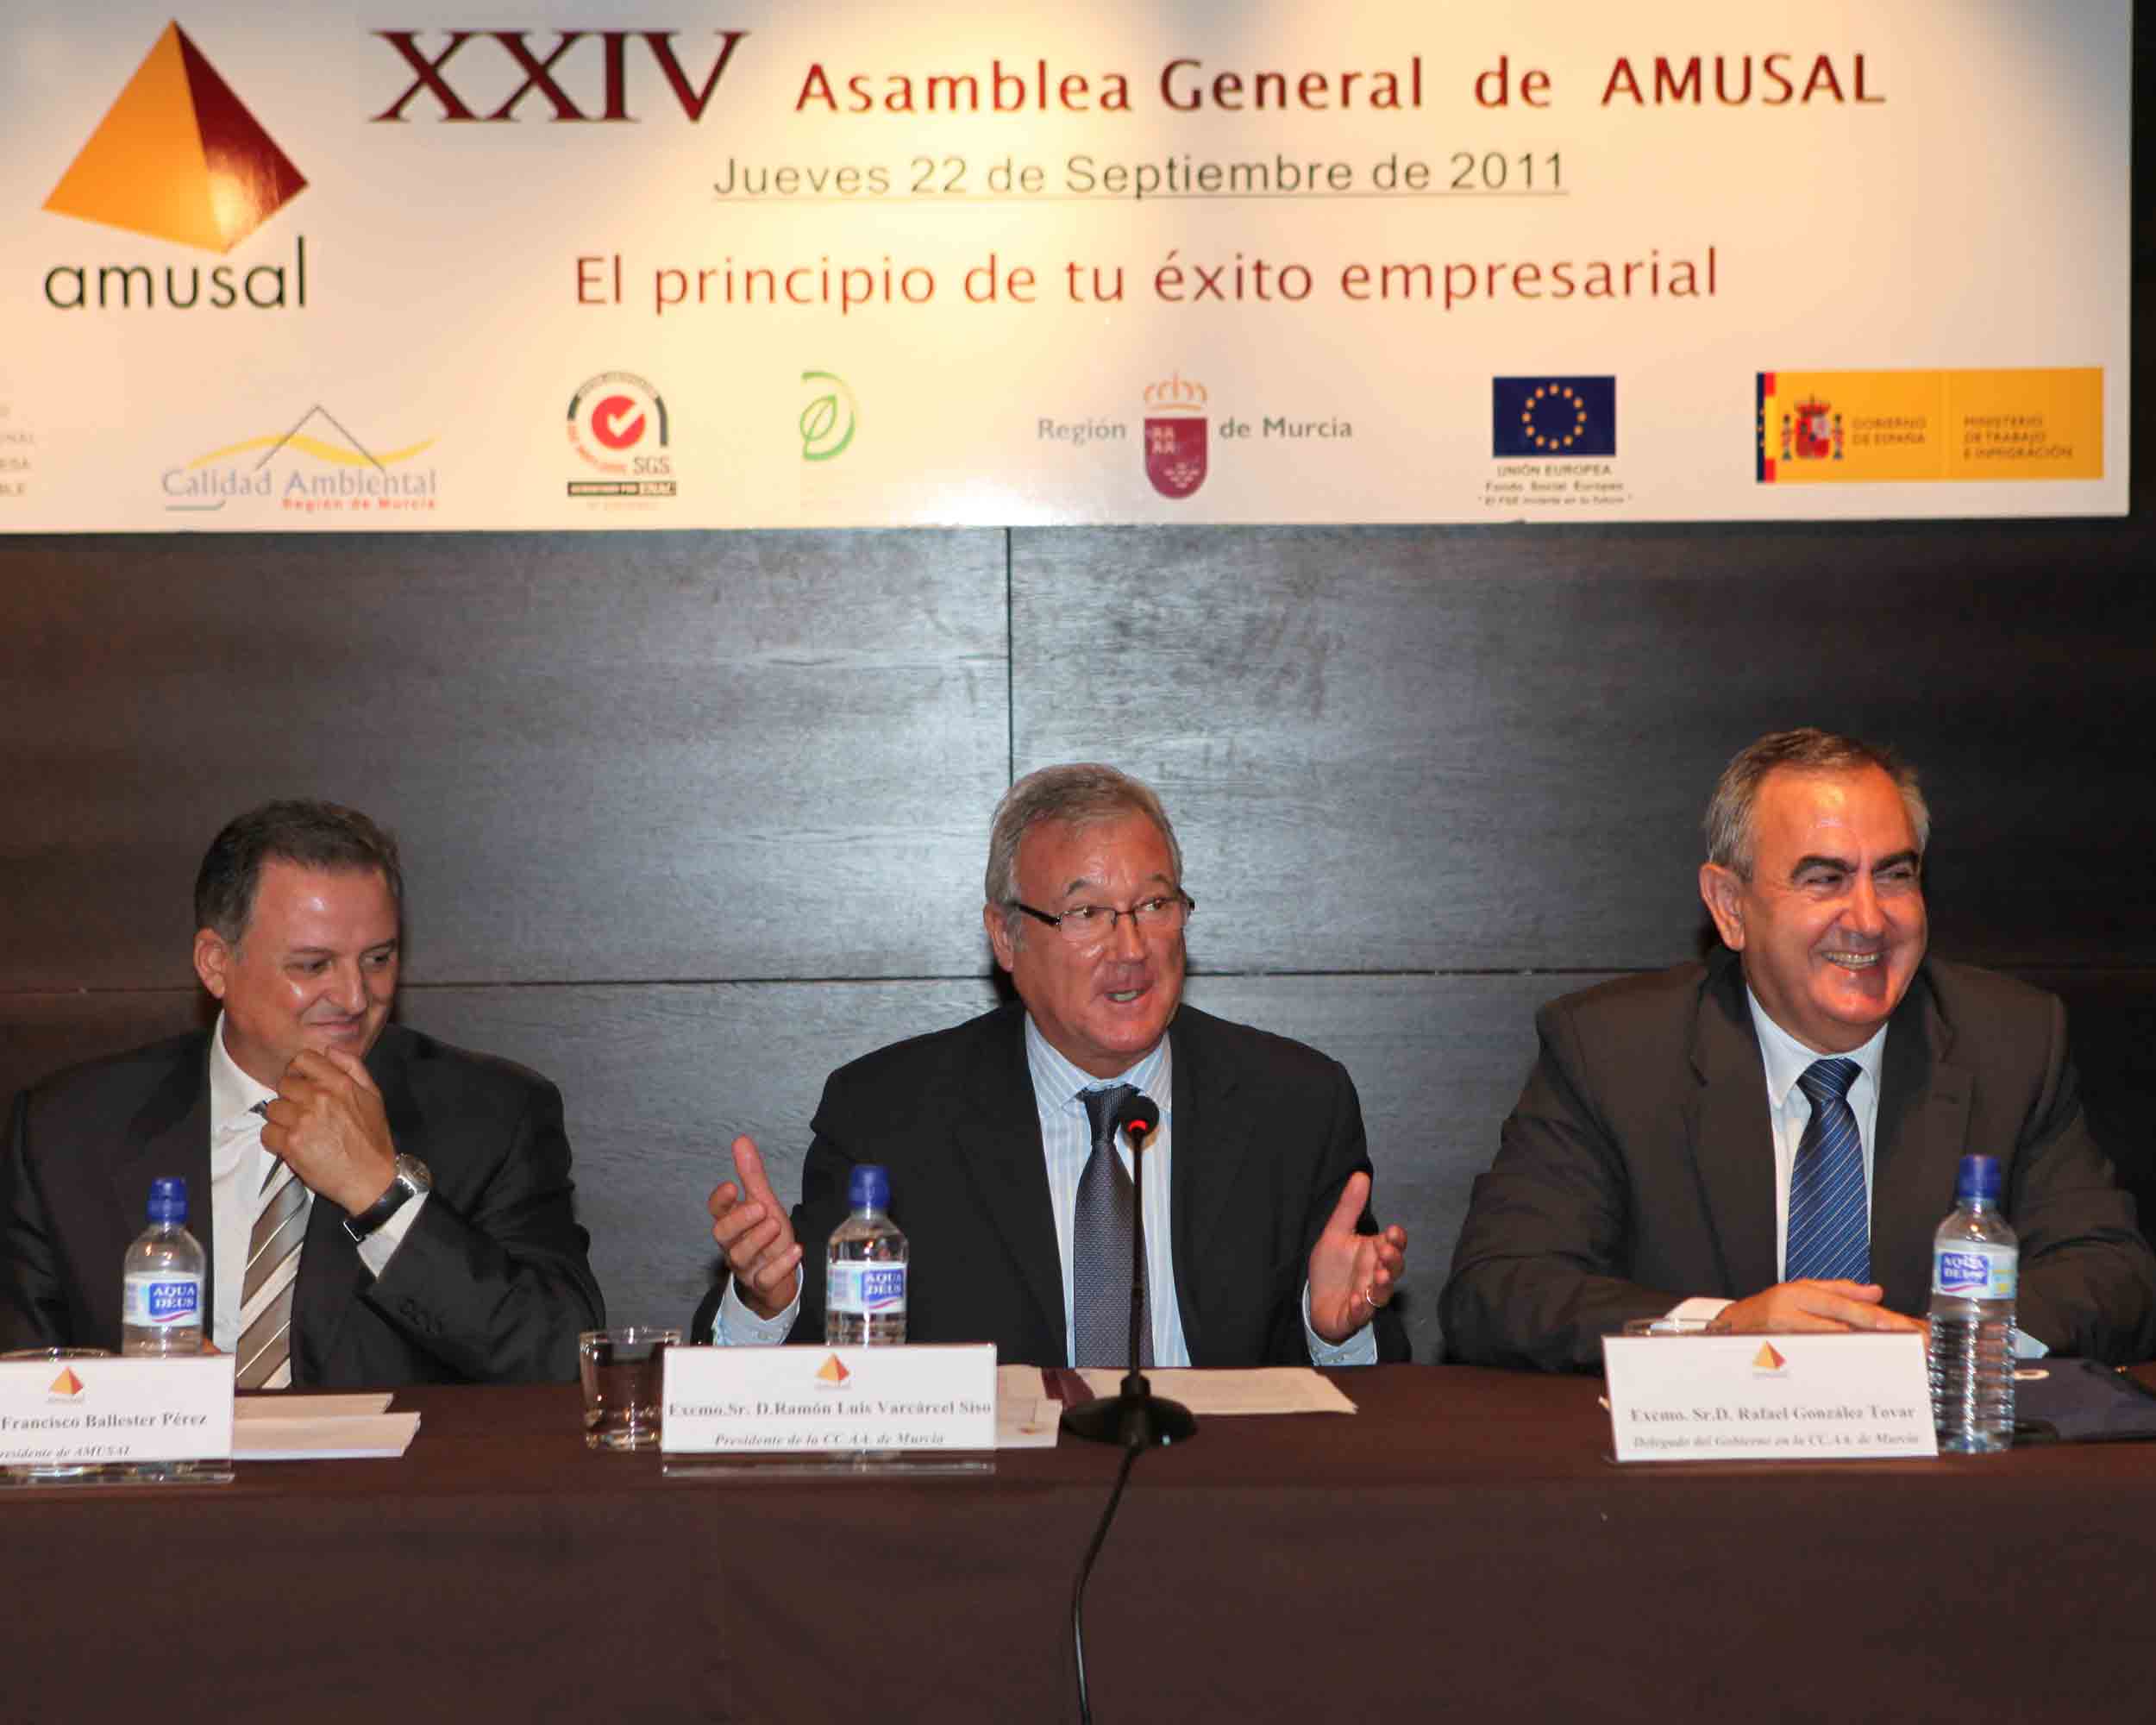 XXIV_Asamblea_Amusal